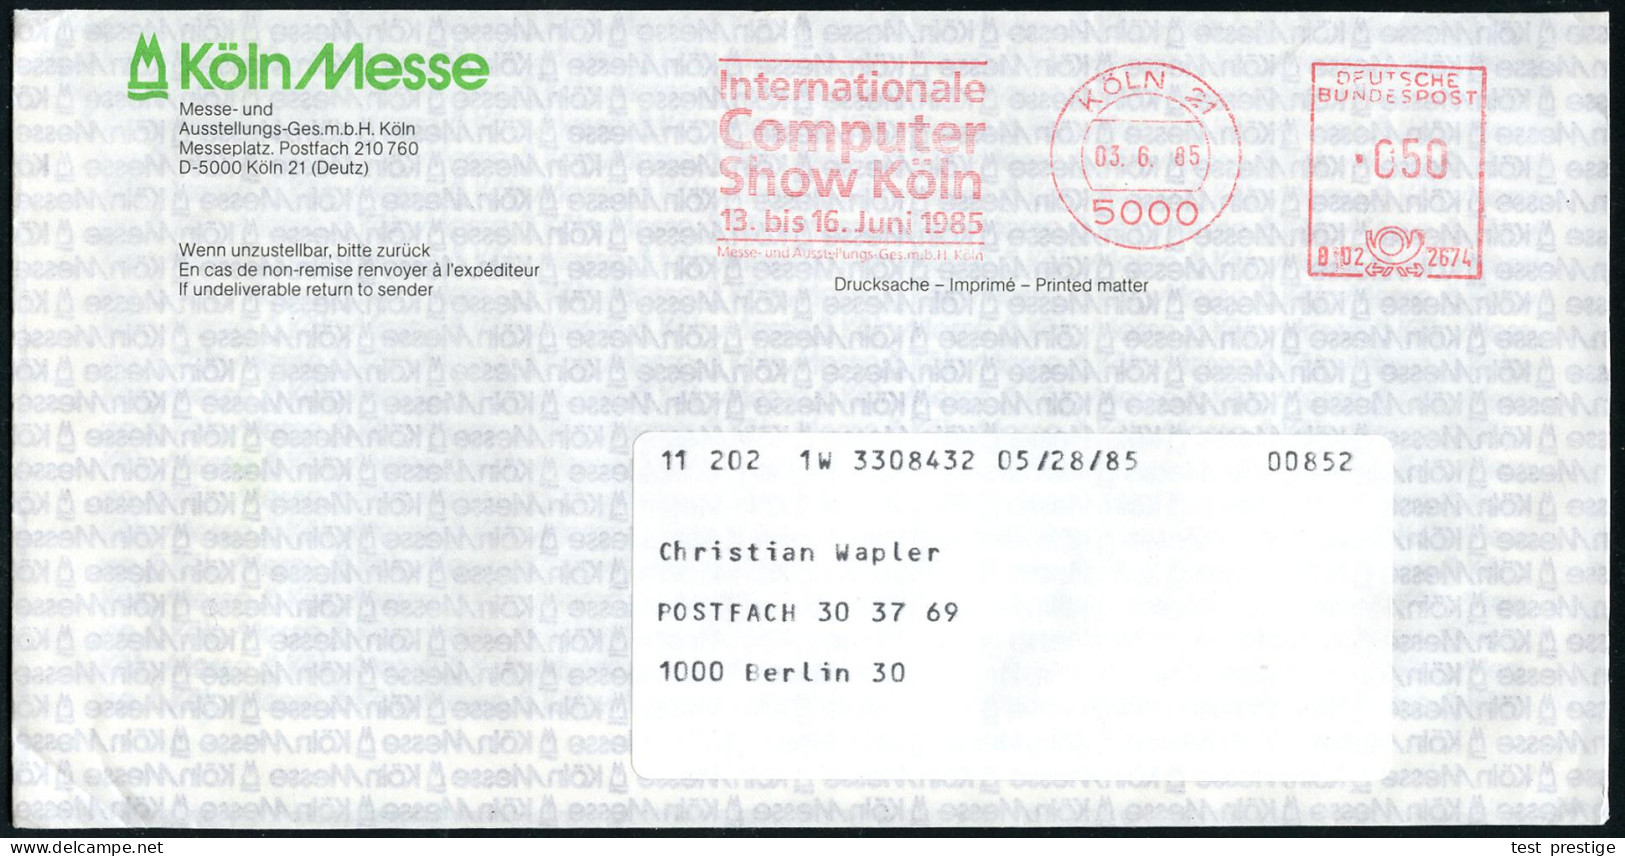 5000 KÖLN 21/ Internationale/ Computer/ Show../ 13.bis 16.Juni 1985 (3.6.) Seltener AFS Der Messe-GmbH Mit Kennung Auf Z - Computers